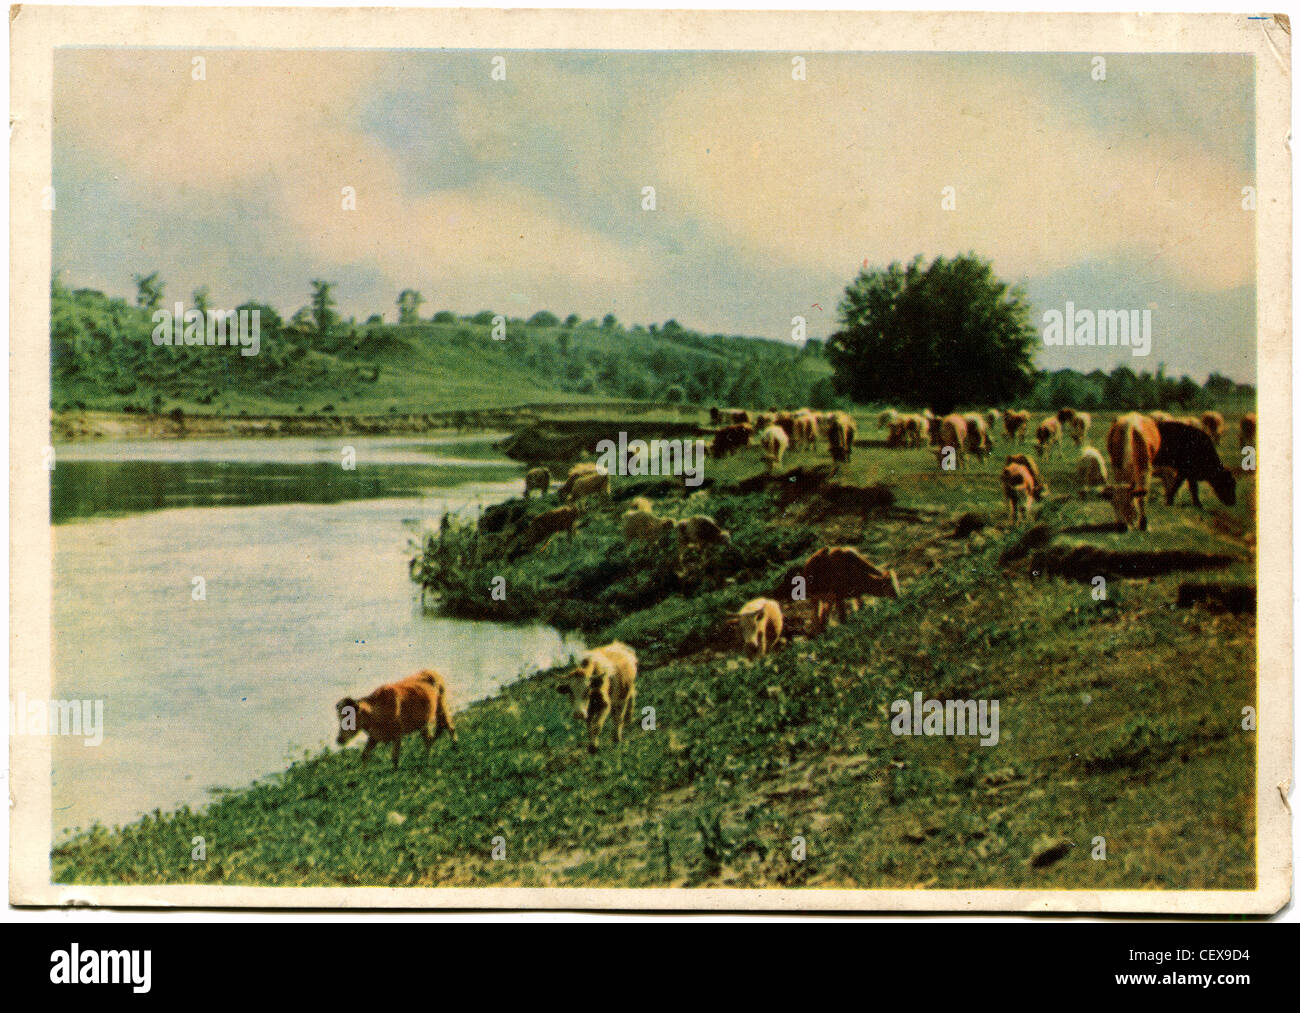 Unione Sovietica - 1962 CIRCA: cartoline Vintage mostra alla mandria di vacche sulla banca del fiume, URSS, 1962 Foto Stock